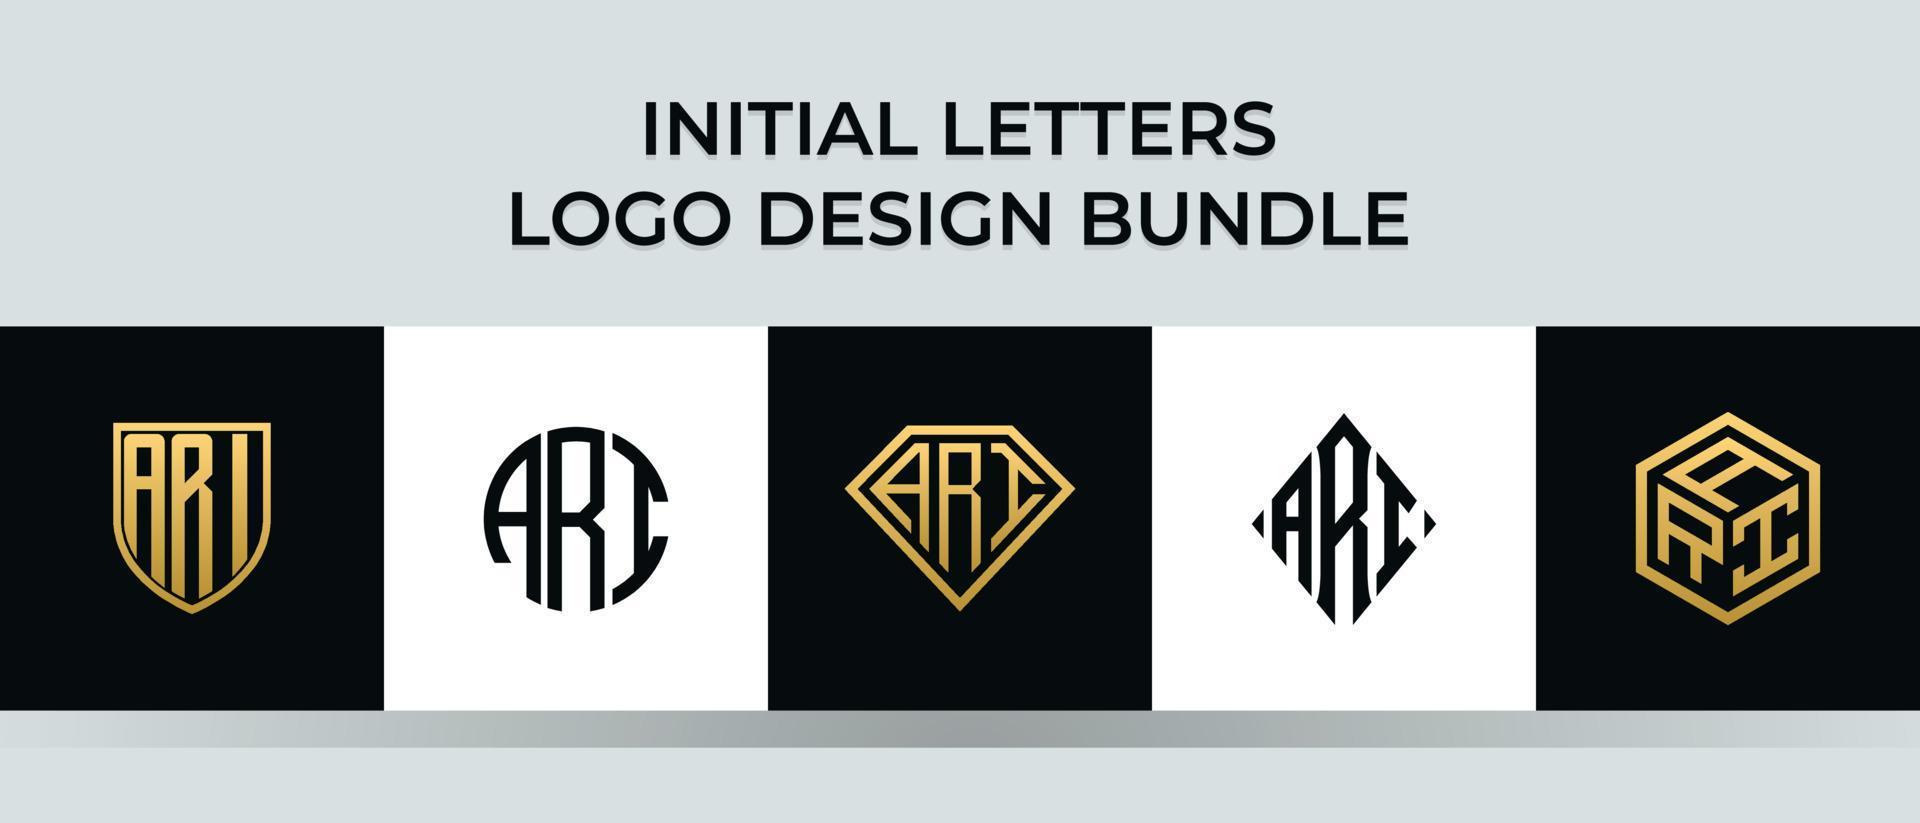 lettere iniziali ari logo design bundle vettore